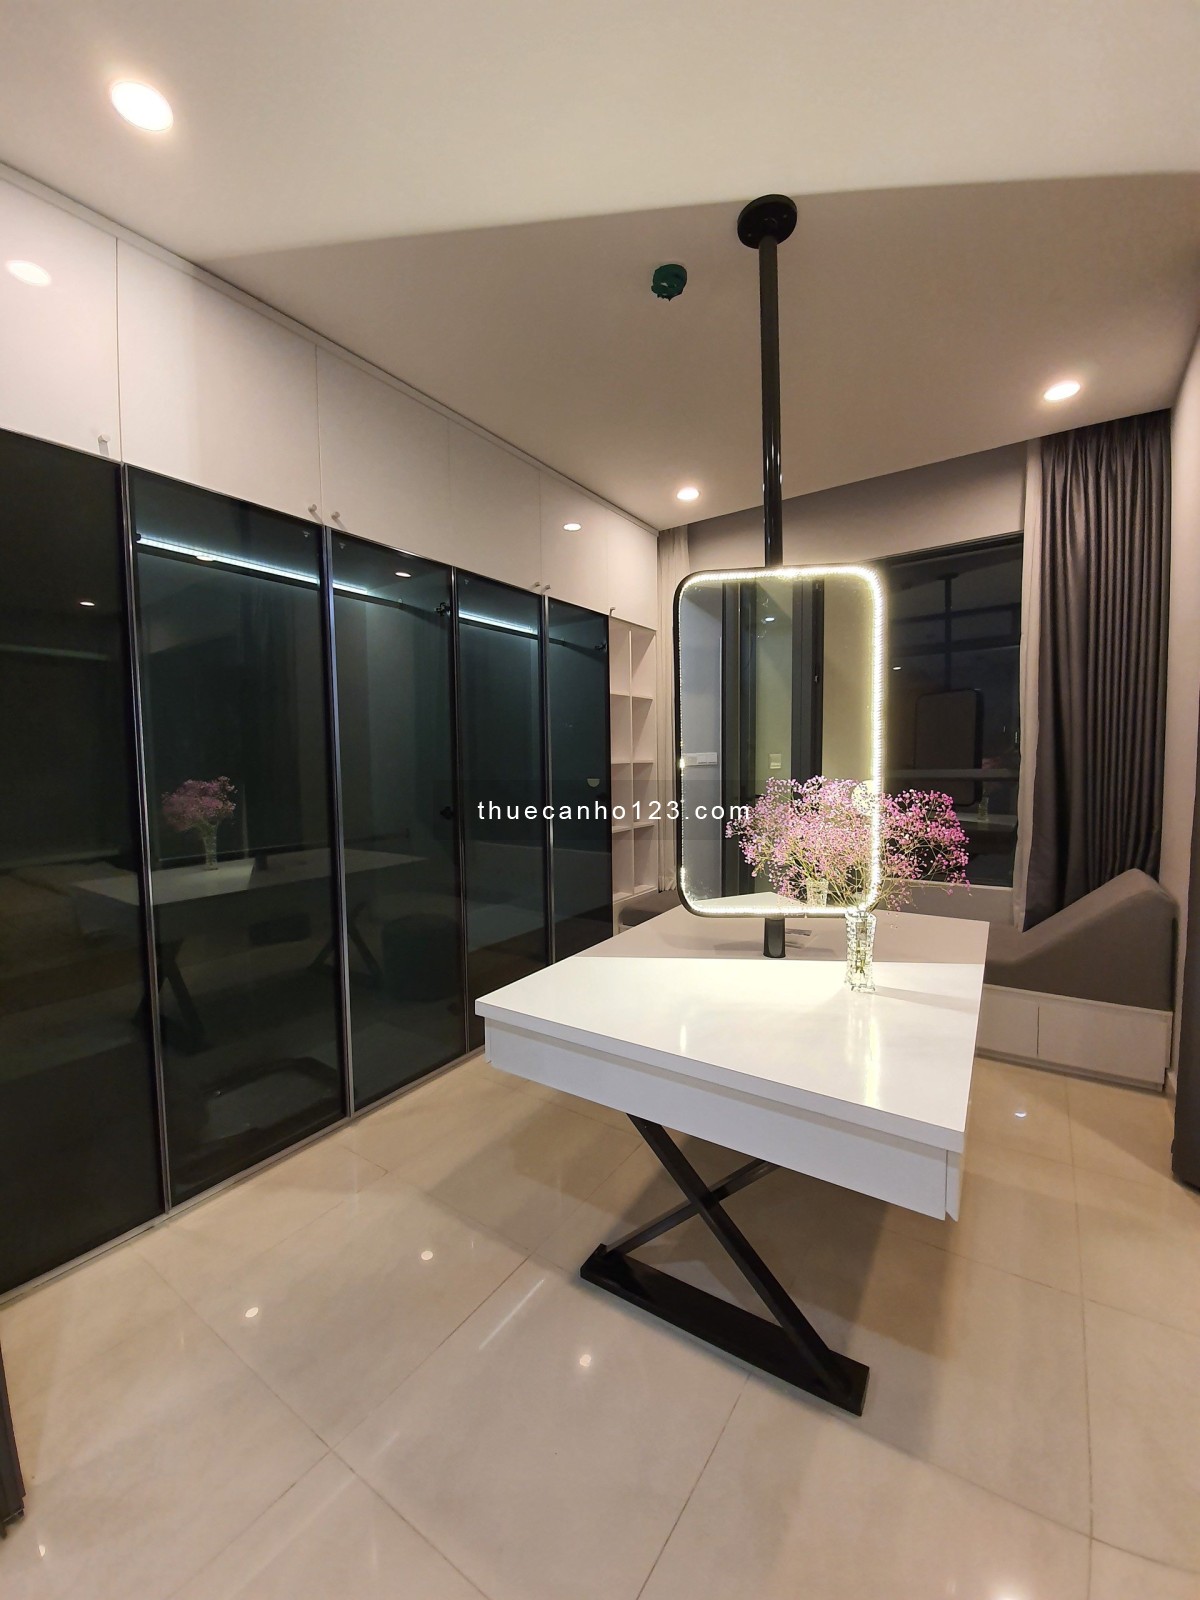 Cần cho thuê căn hộ 3 phòng ngủ - Diamond Celadon City quận Tân Phú, bao phí quản lý. LH 0933149558